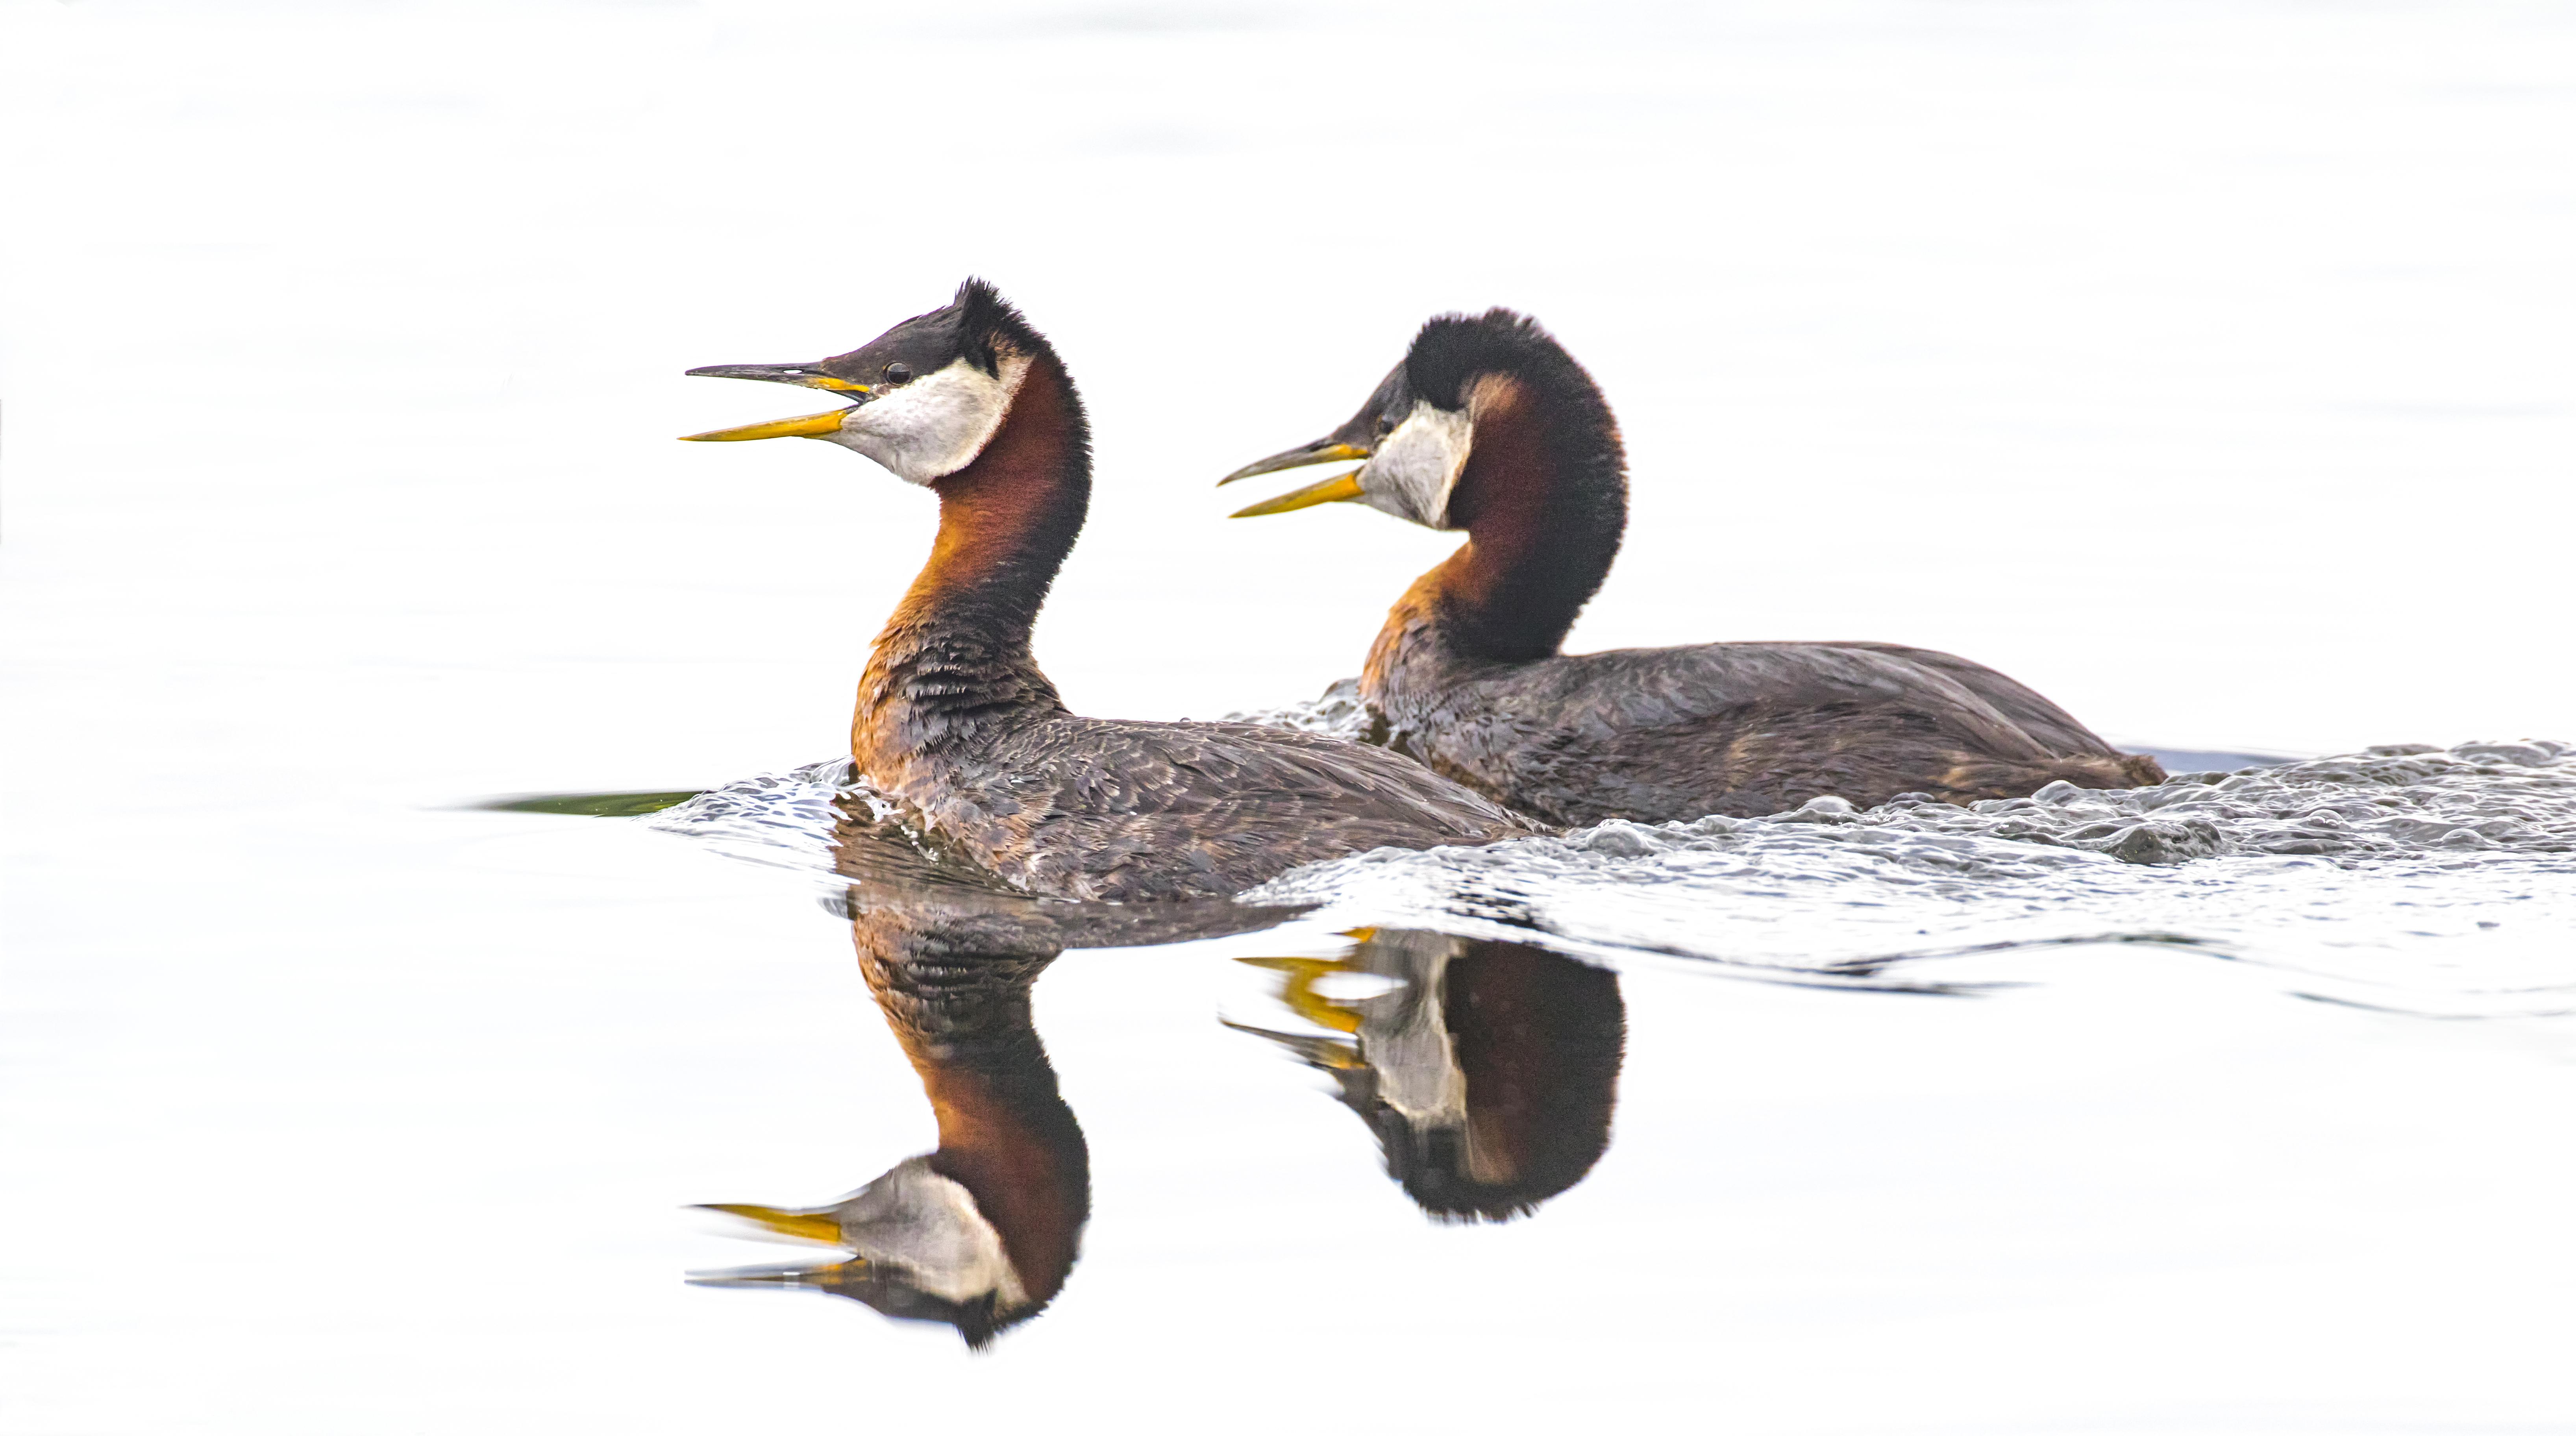 June 5-10, 2020: Alaska: Birds and Mammals of the Kenai Peninsula